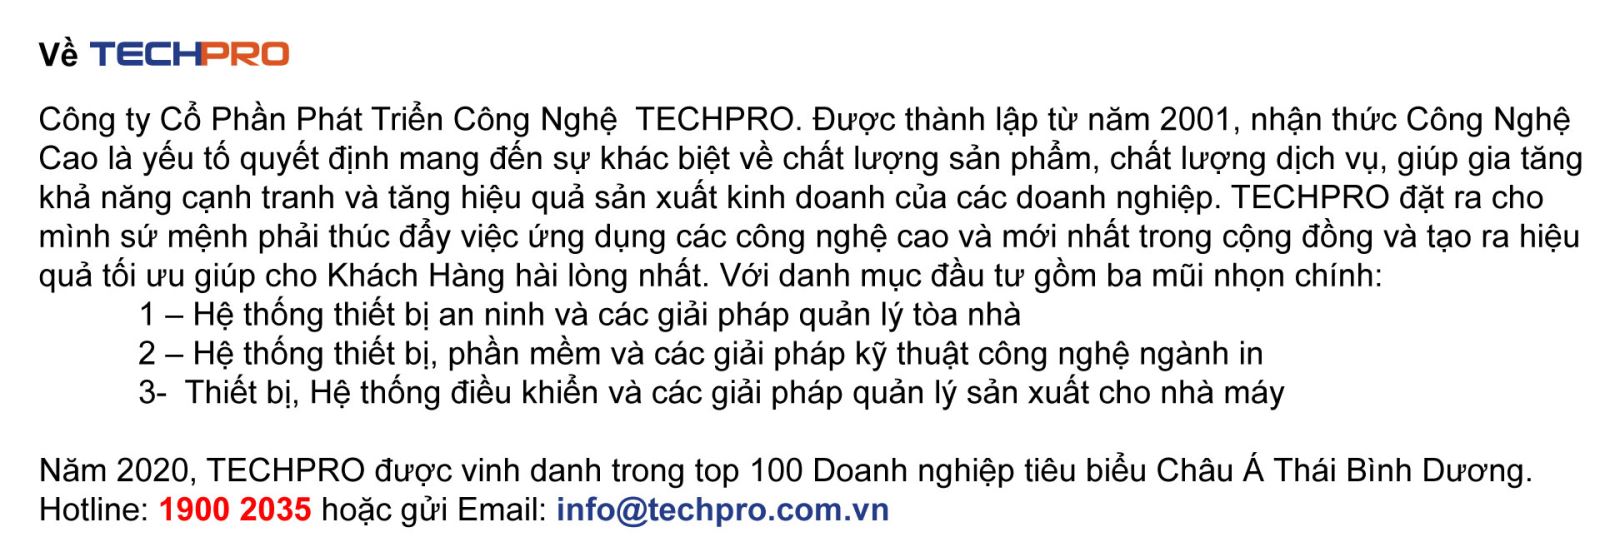 thông tin giới thiệu về công ty TECHPRO